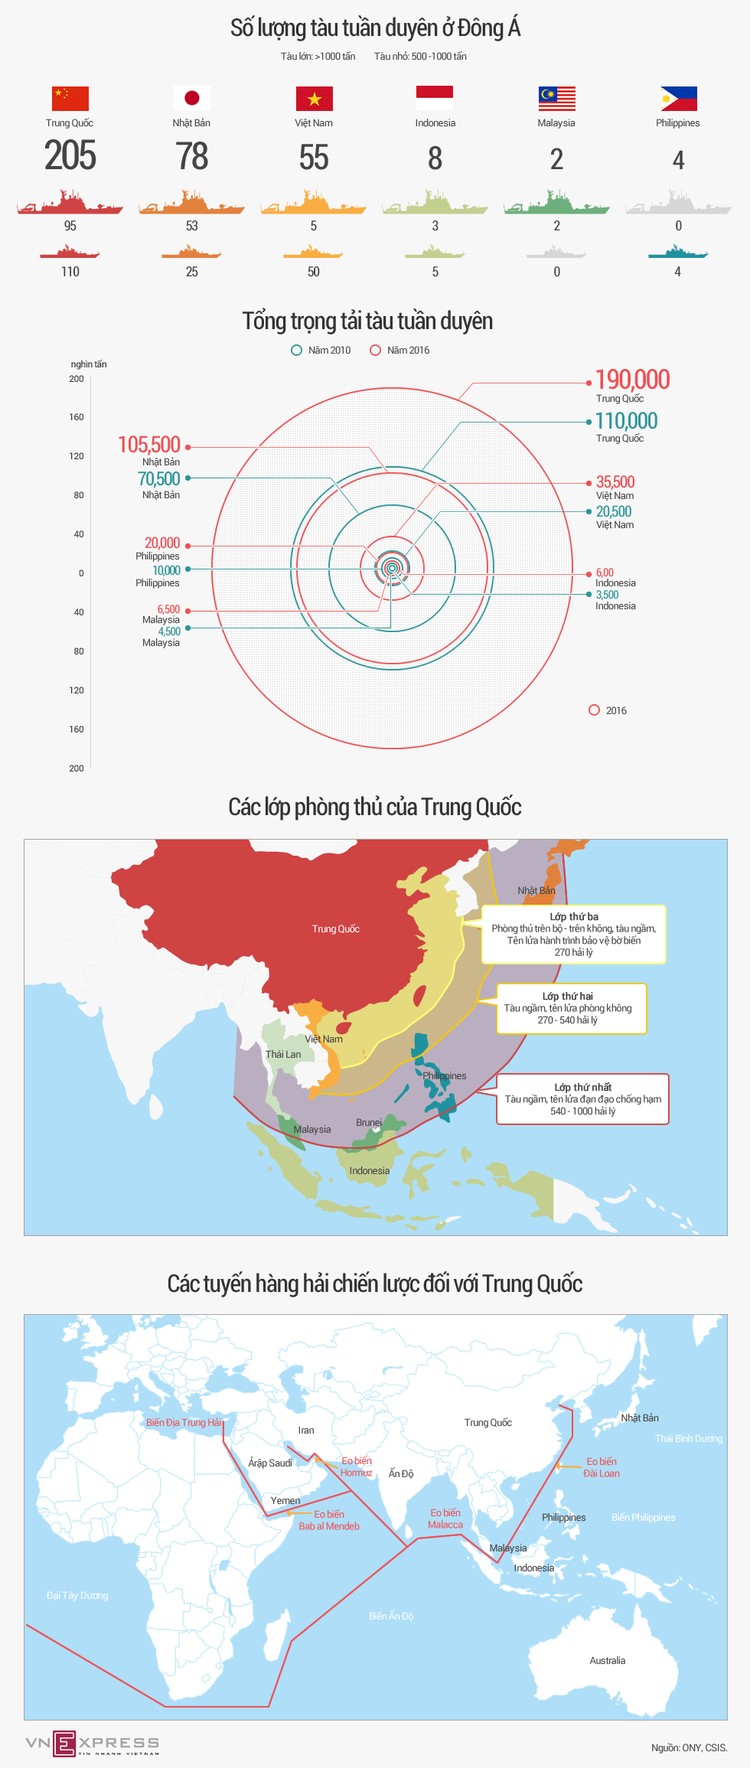 Tương quan sức mạnh tuần duyên Trung Quốc với các nước láng giềng